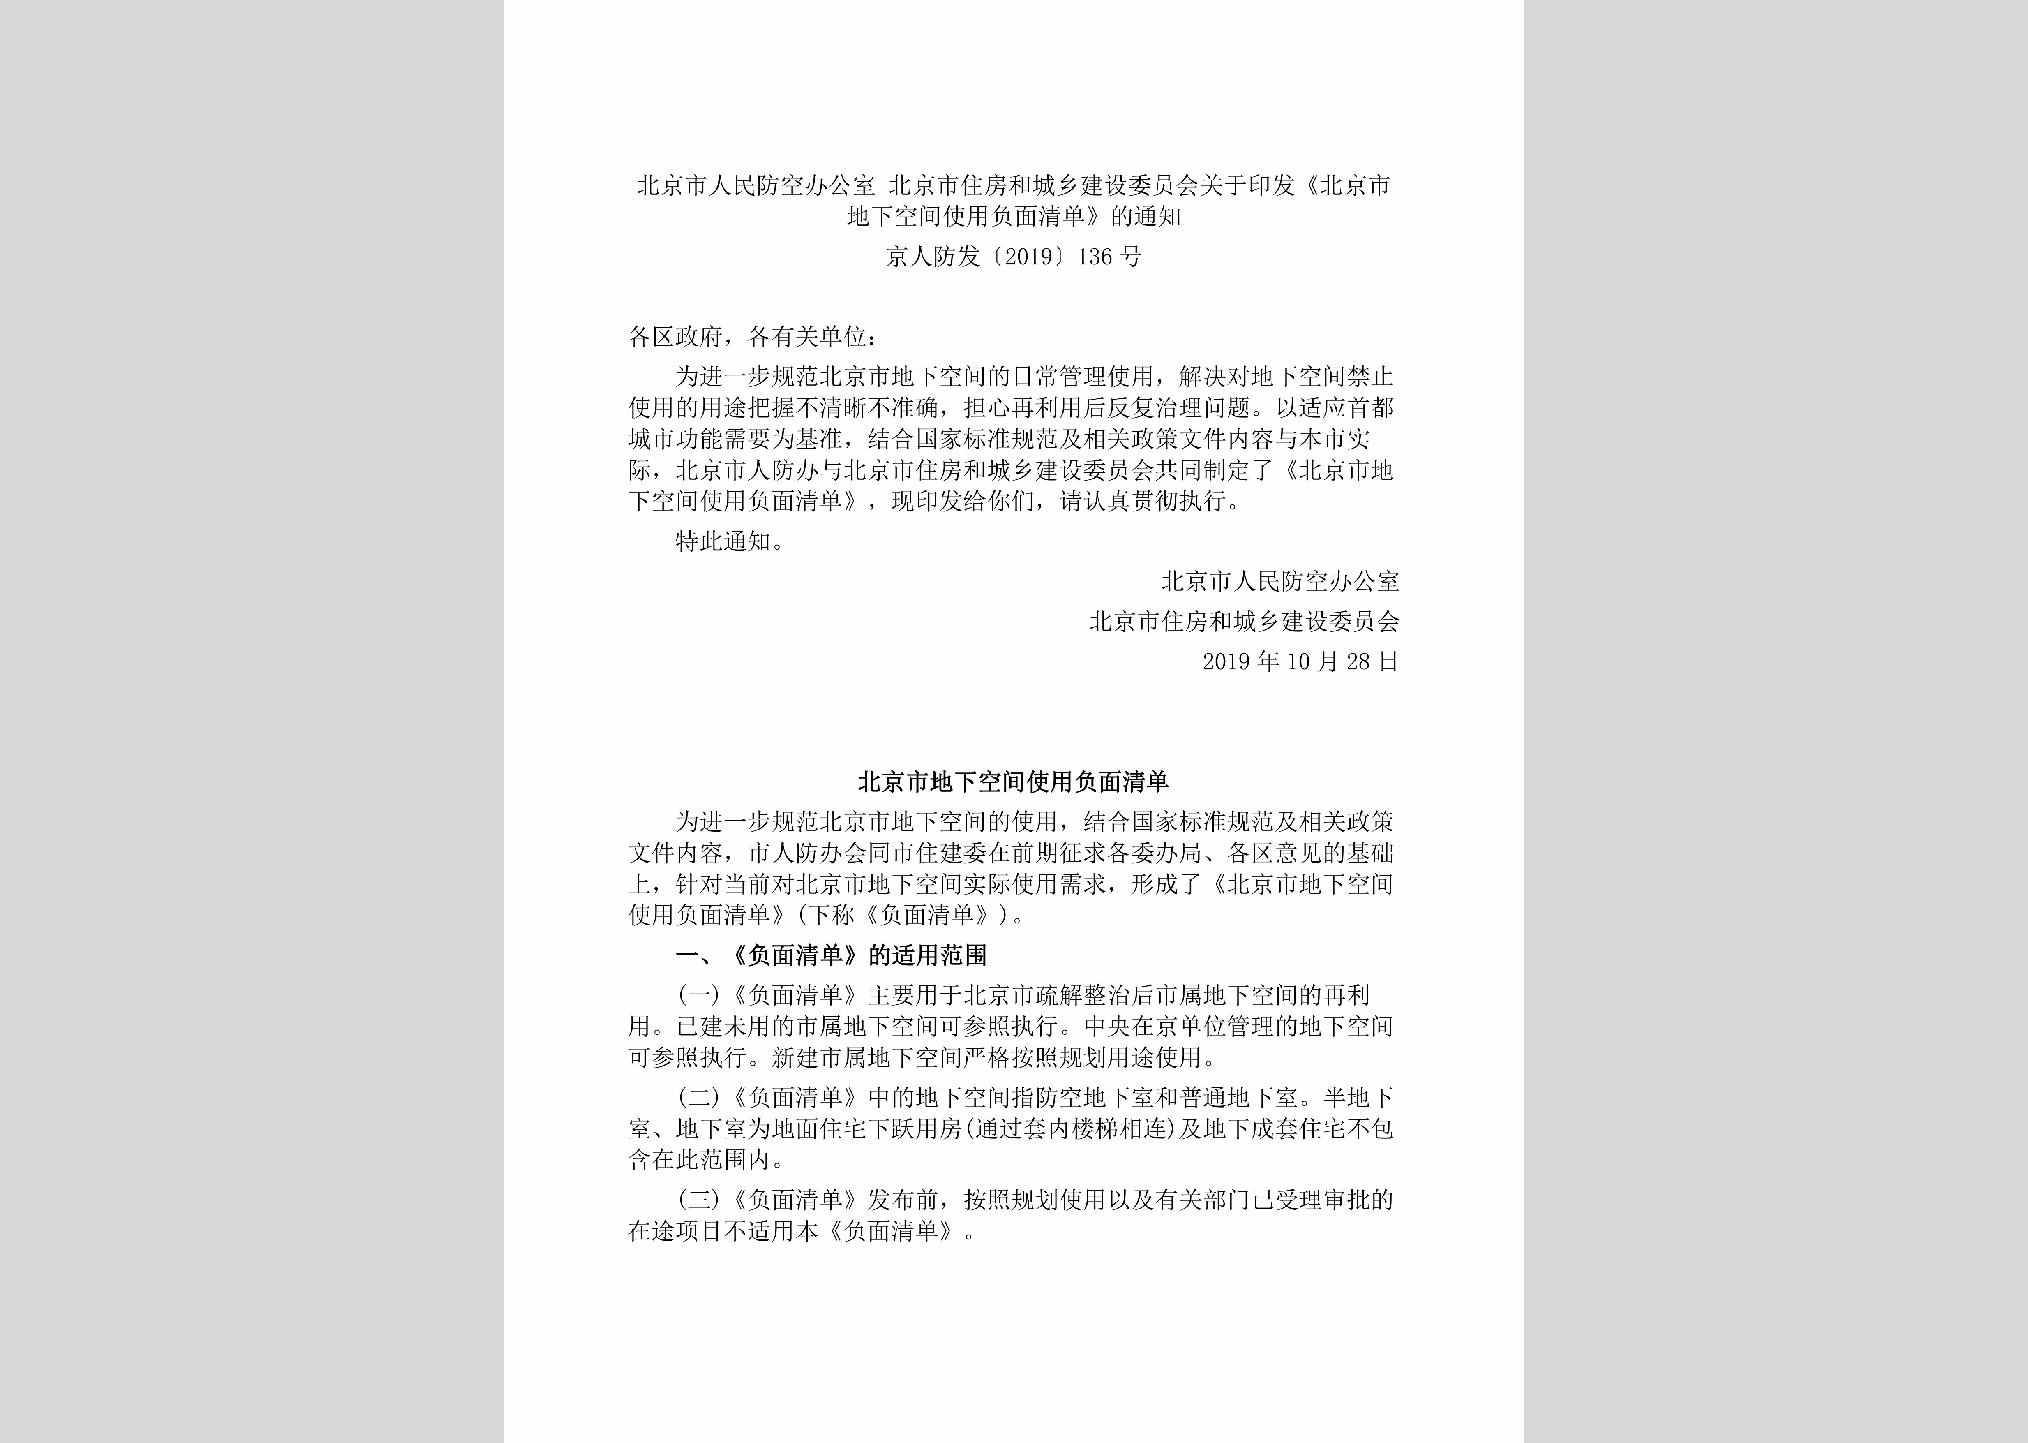 京人防发[2019]136号：北京市人民防空办公室北京市住房和城乡建设委员会关于印发《北京市地下空间使用负面清单》的通知